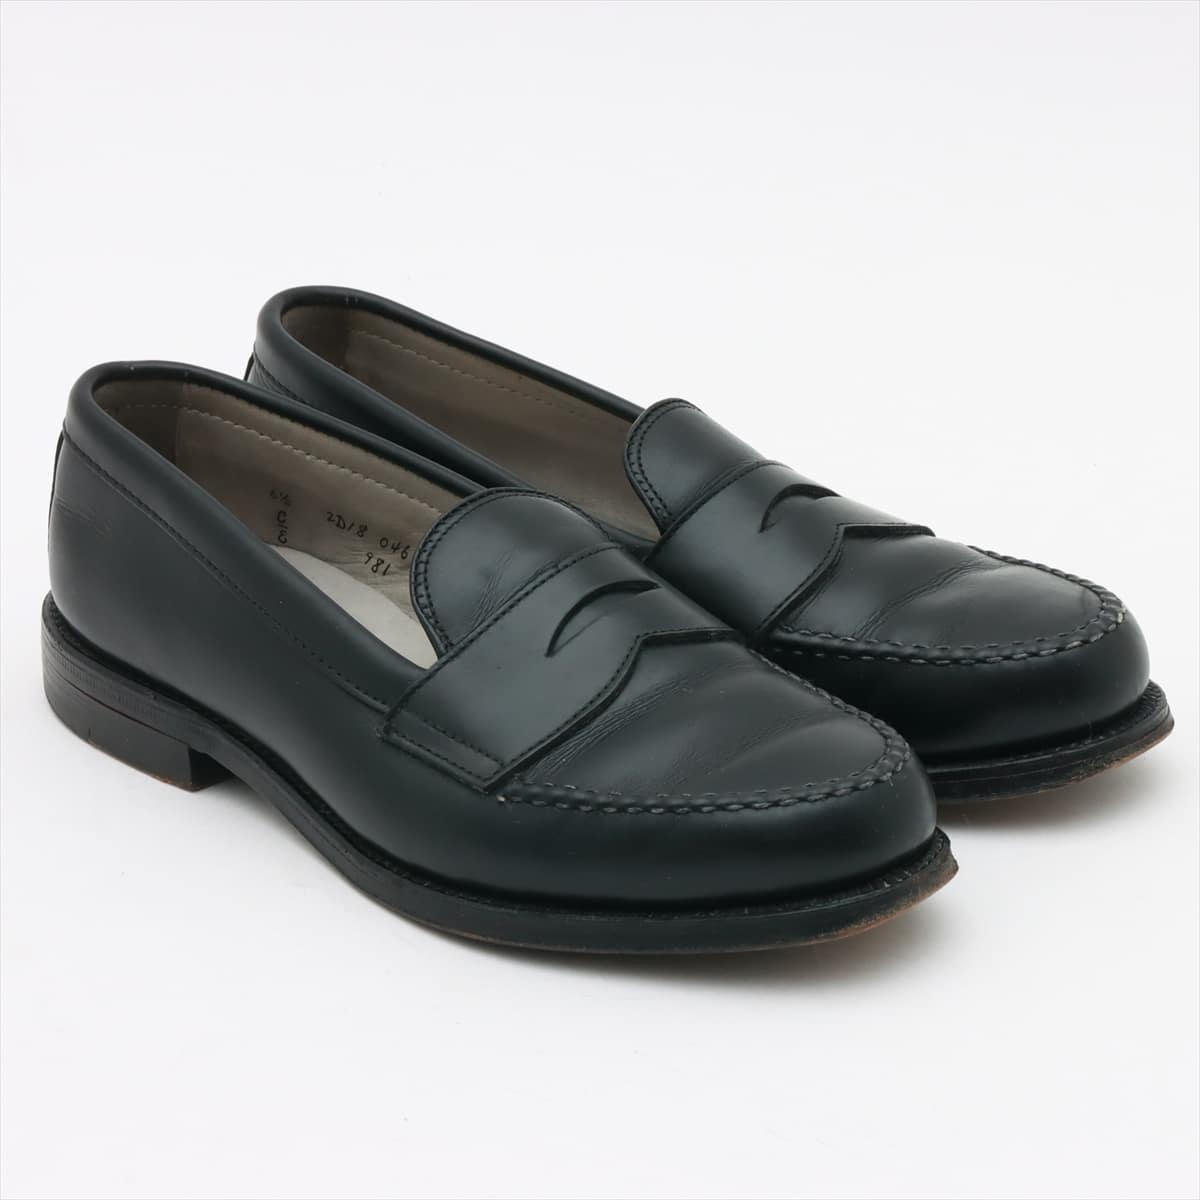 Alden Leather Loafer 6 1/2C Men's Black 981 calf penny loafers